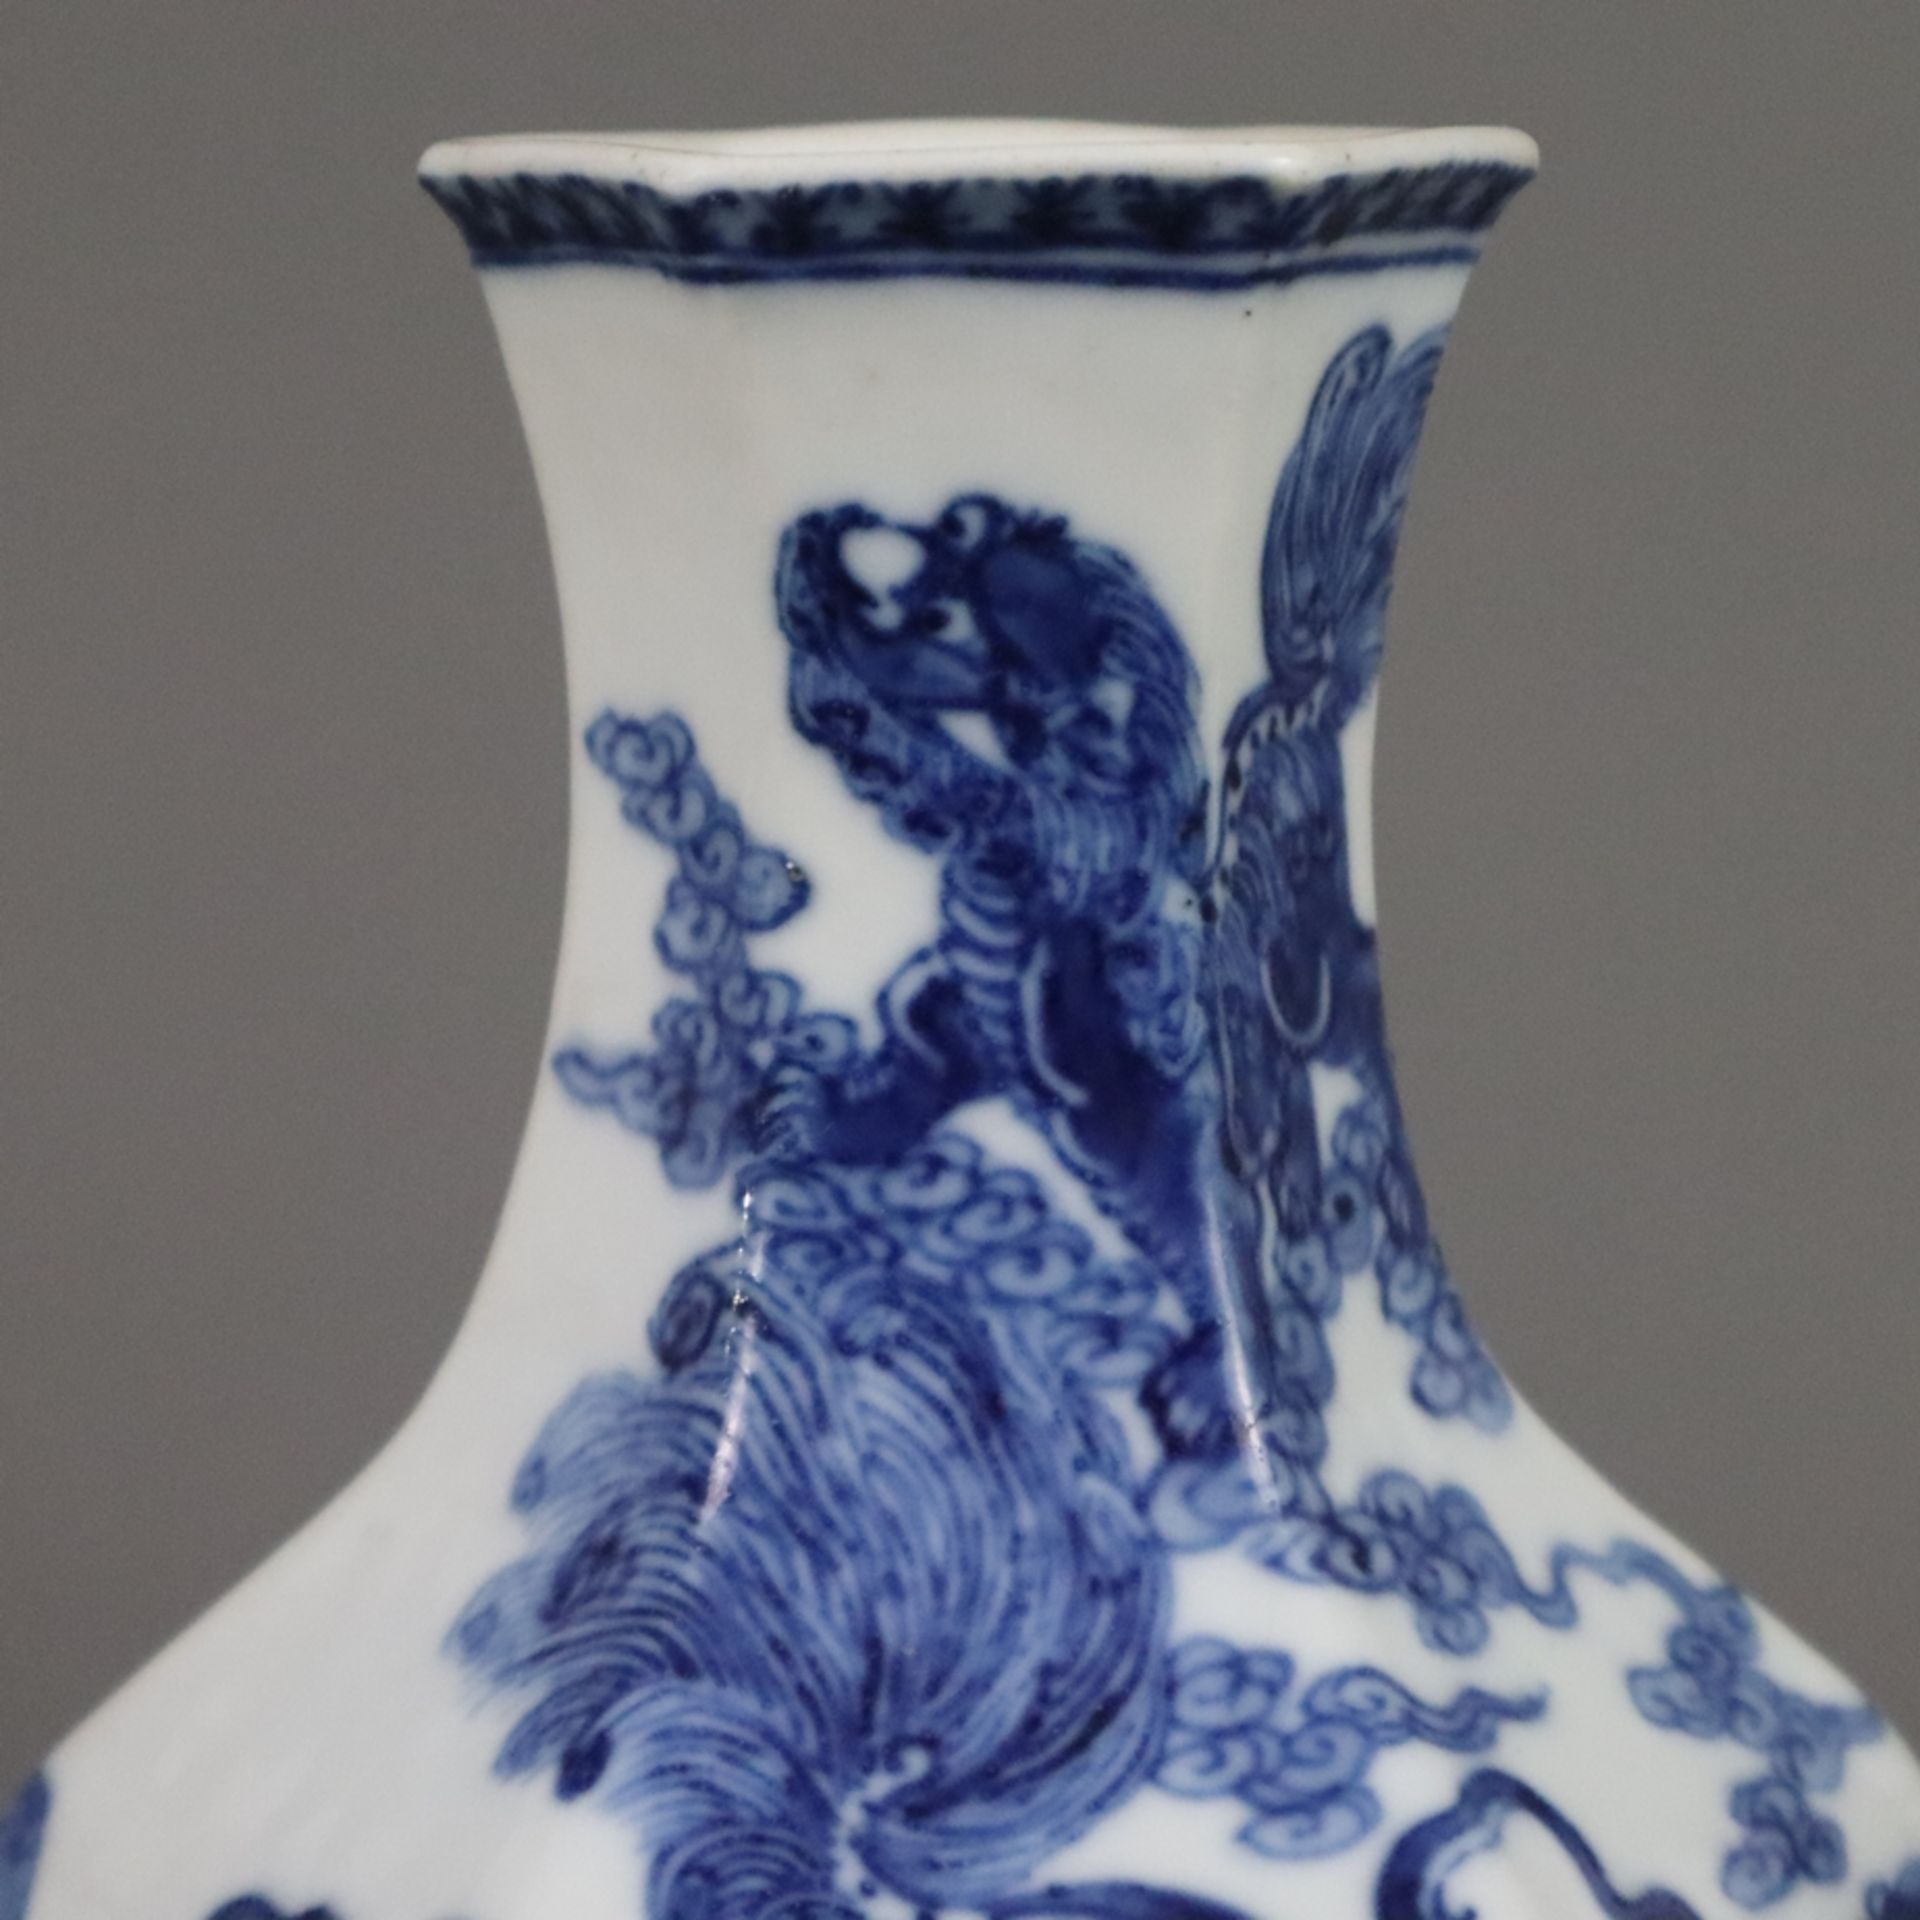 Blau-weiße Vase - Porzellan, gebauchte Balusterform 6-fach gekantet, umlaufend fein gemalter unterg - Bild 3 aus 8